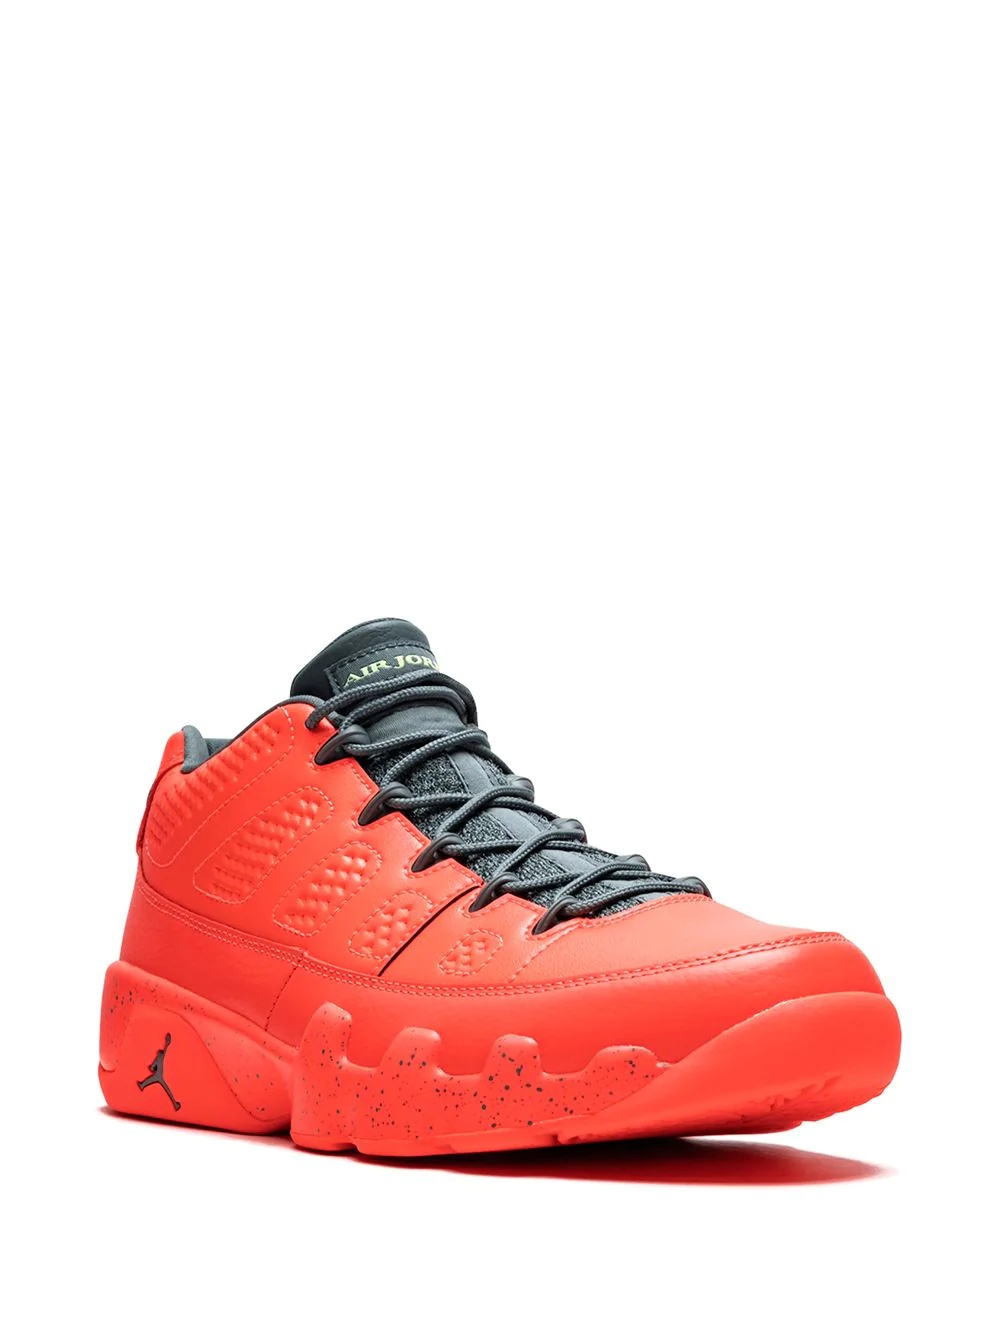 Air Jordan 9 Retro Low sneakers - 2